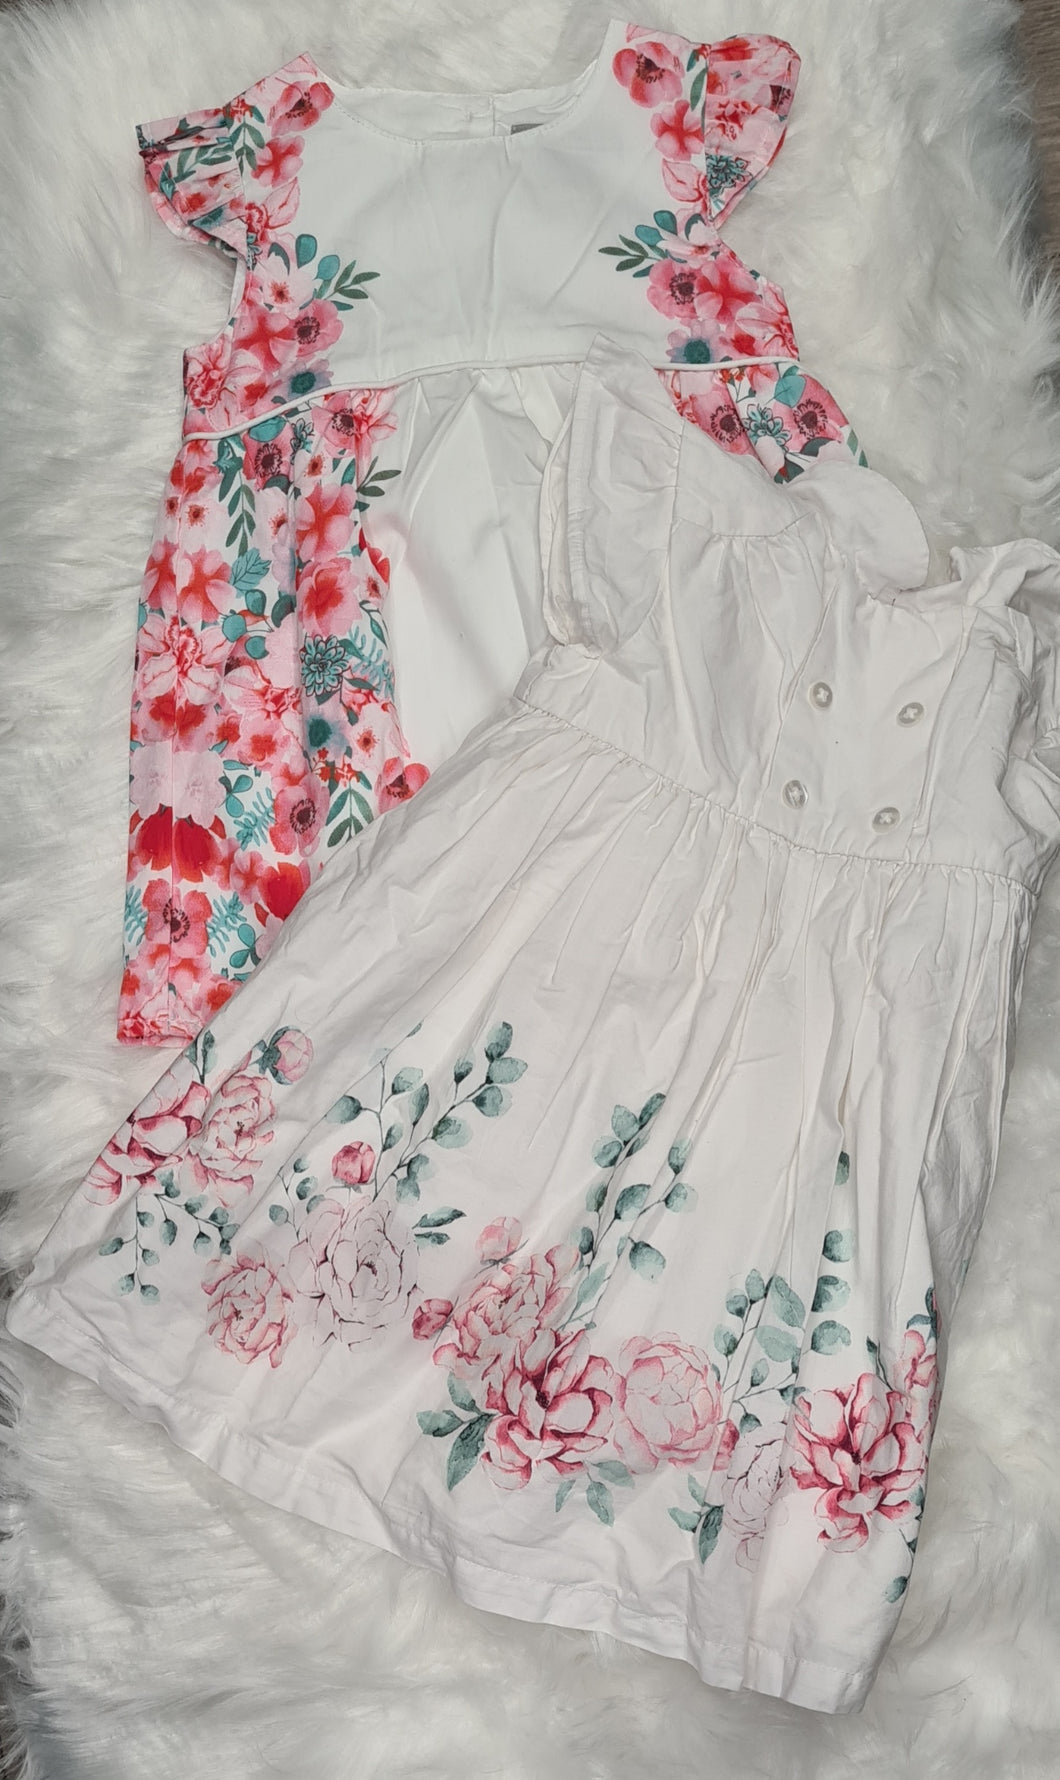 Girls 9-12 months - flower dress X2